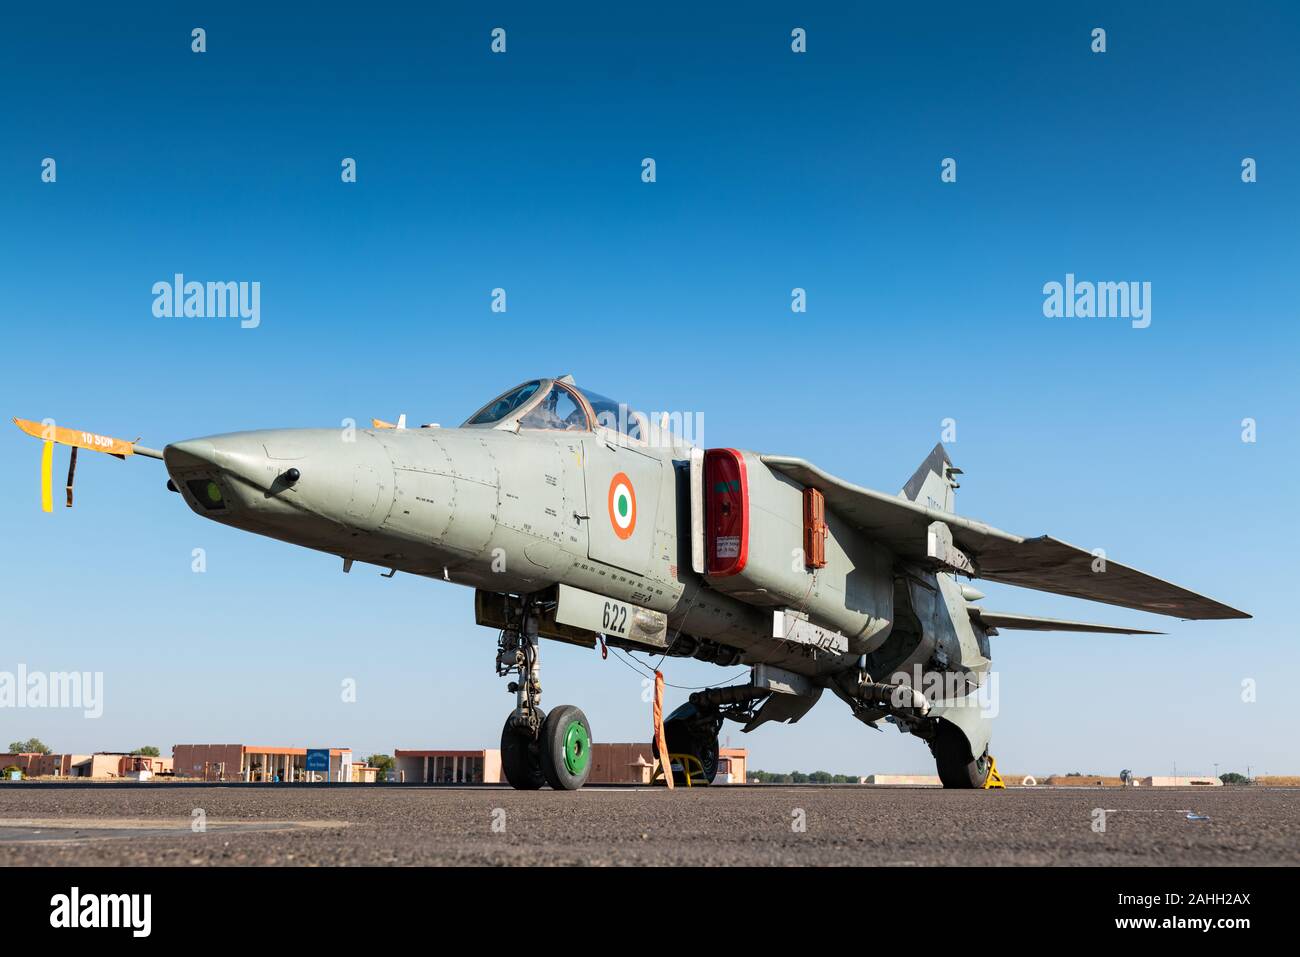 Forza aerea indiana MiG-27 jet da combattimento. L'ultimo parafango swing squadrone della forza aerea indiana gradualmente la MiG-27 su dicembre 27, 2019 Foto Stock